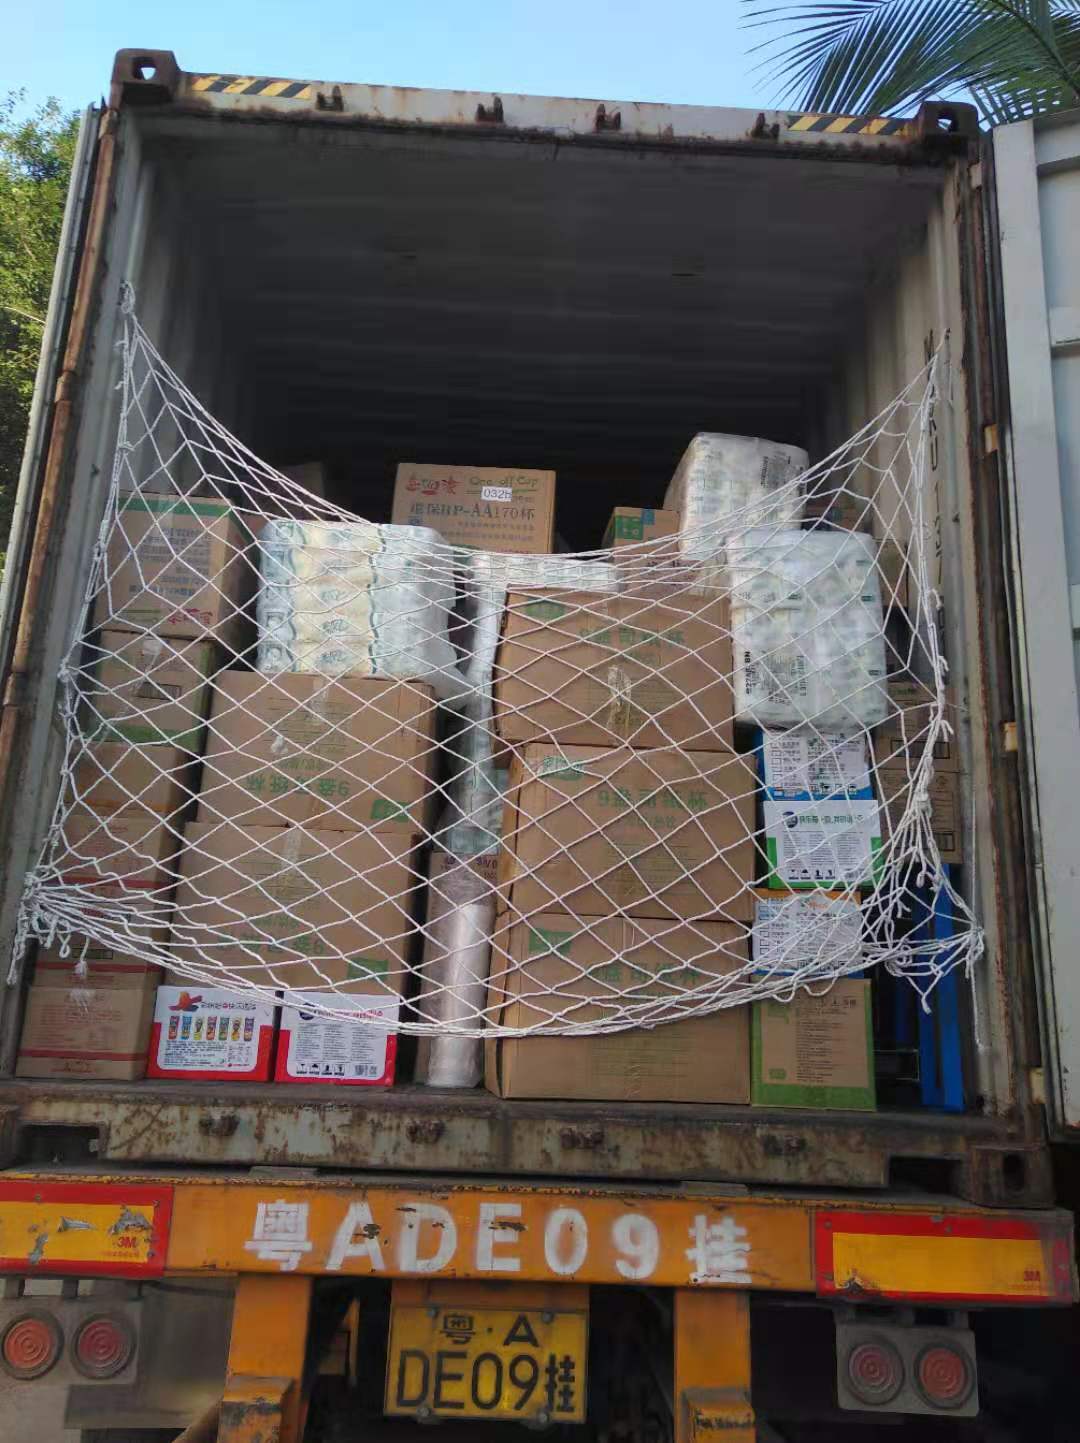 乌鲁木齐物流到越南物流公司运费 越南物流费用 越南物流提供一站式物流服务